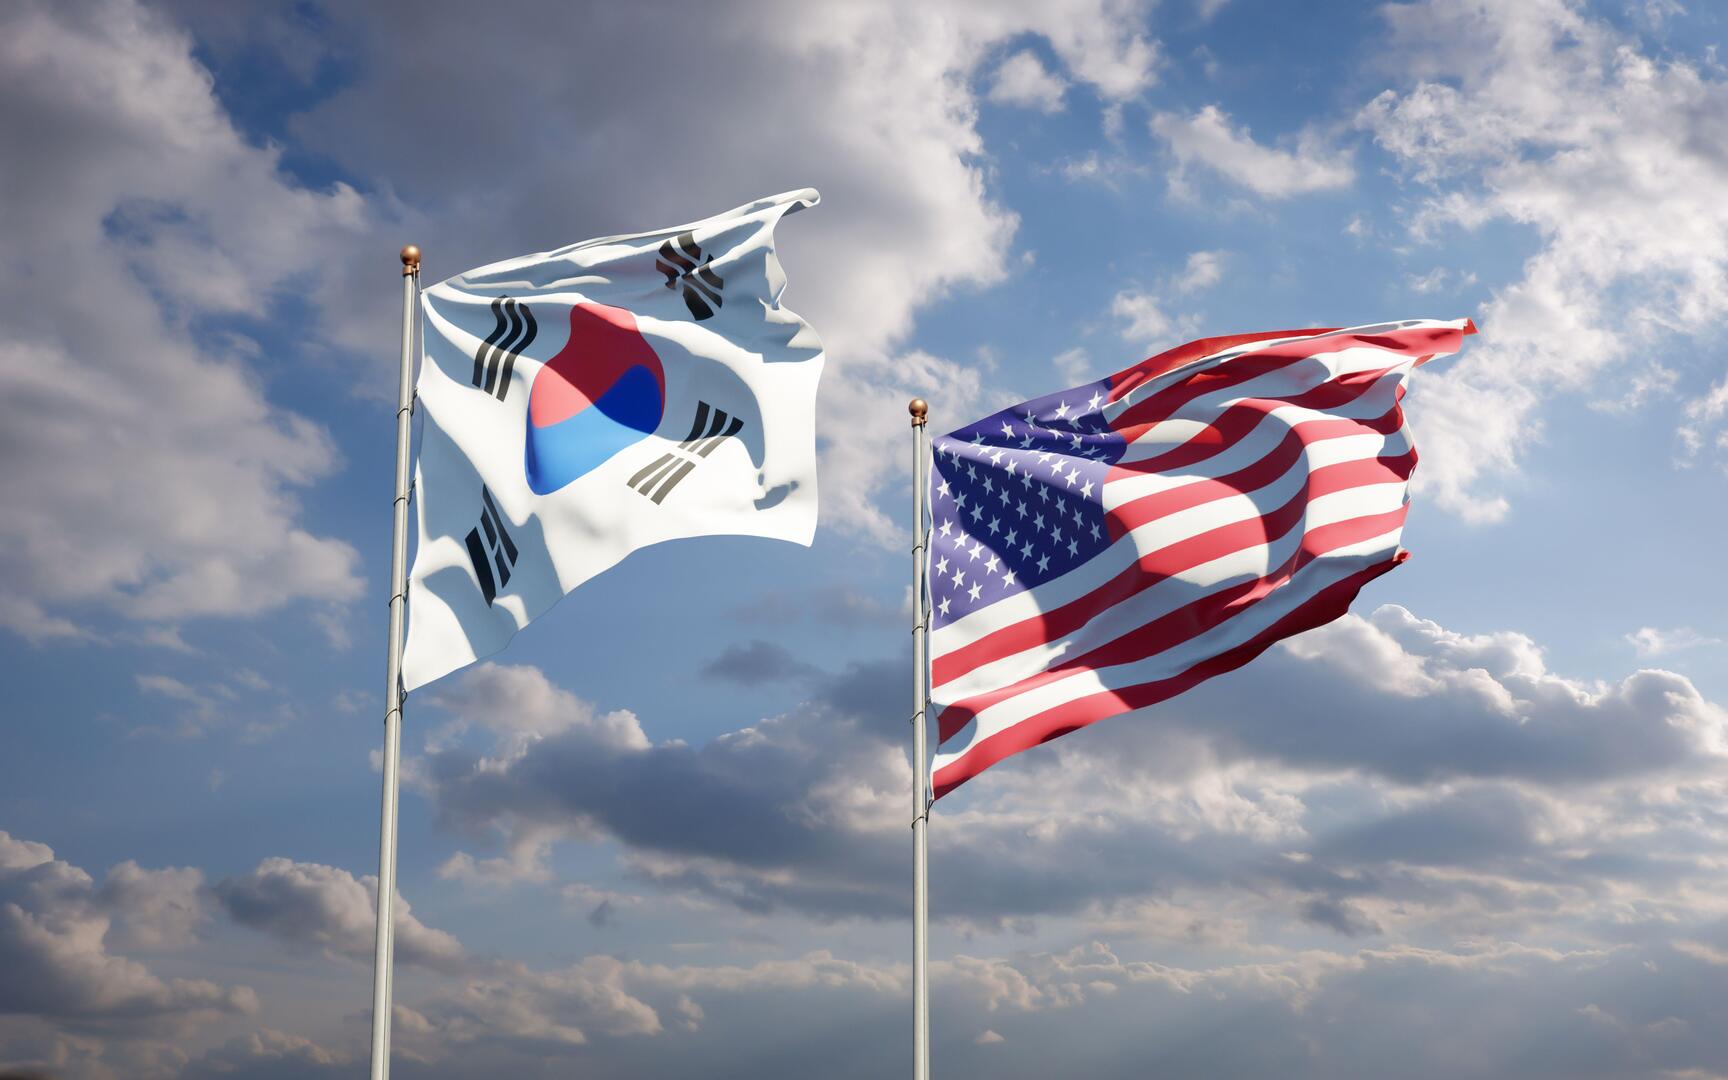 واشنطن وسيؤول تبحثان إطلاق بيونغ يانغ للصواريخ وزيارة بايدن المرتقبة لكوريا الجنوبية